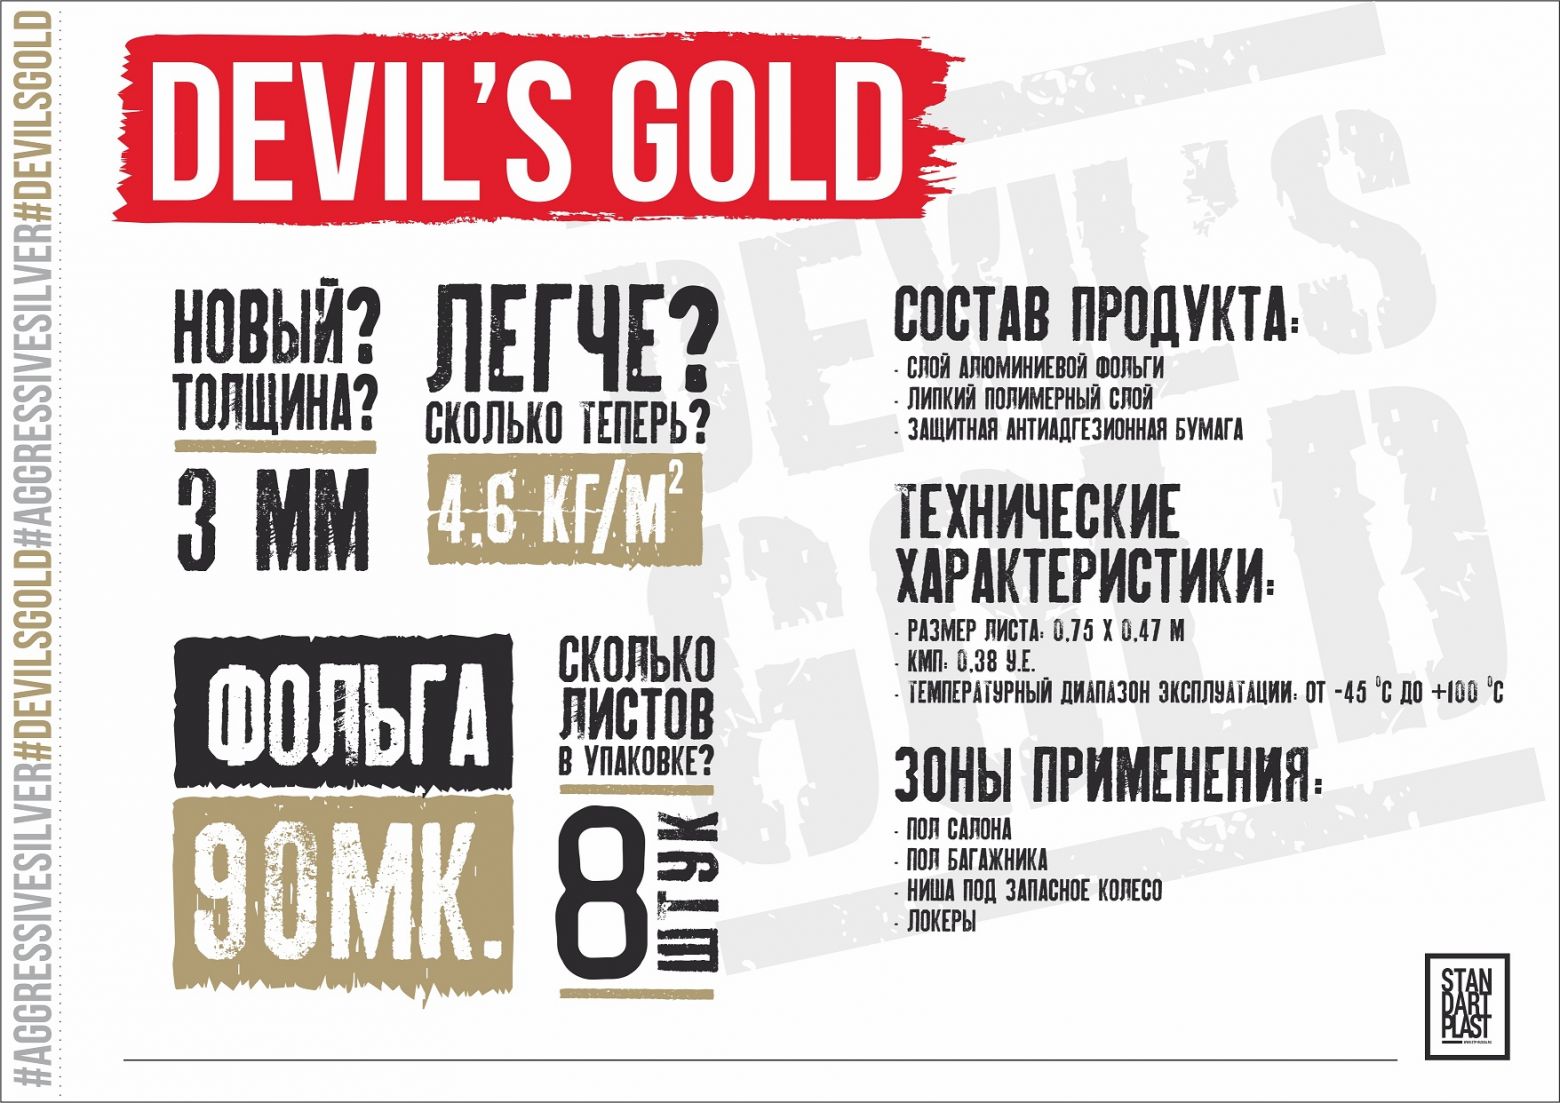 Devils_gold